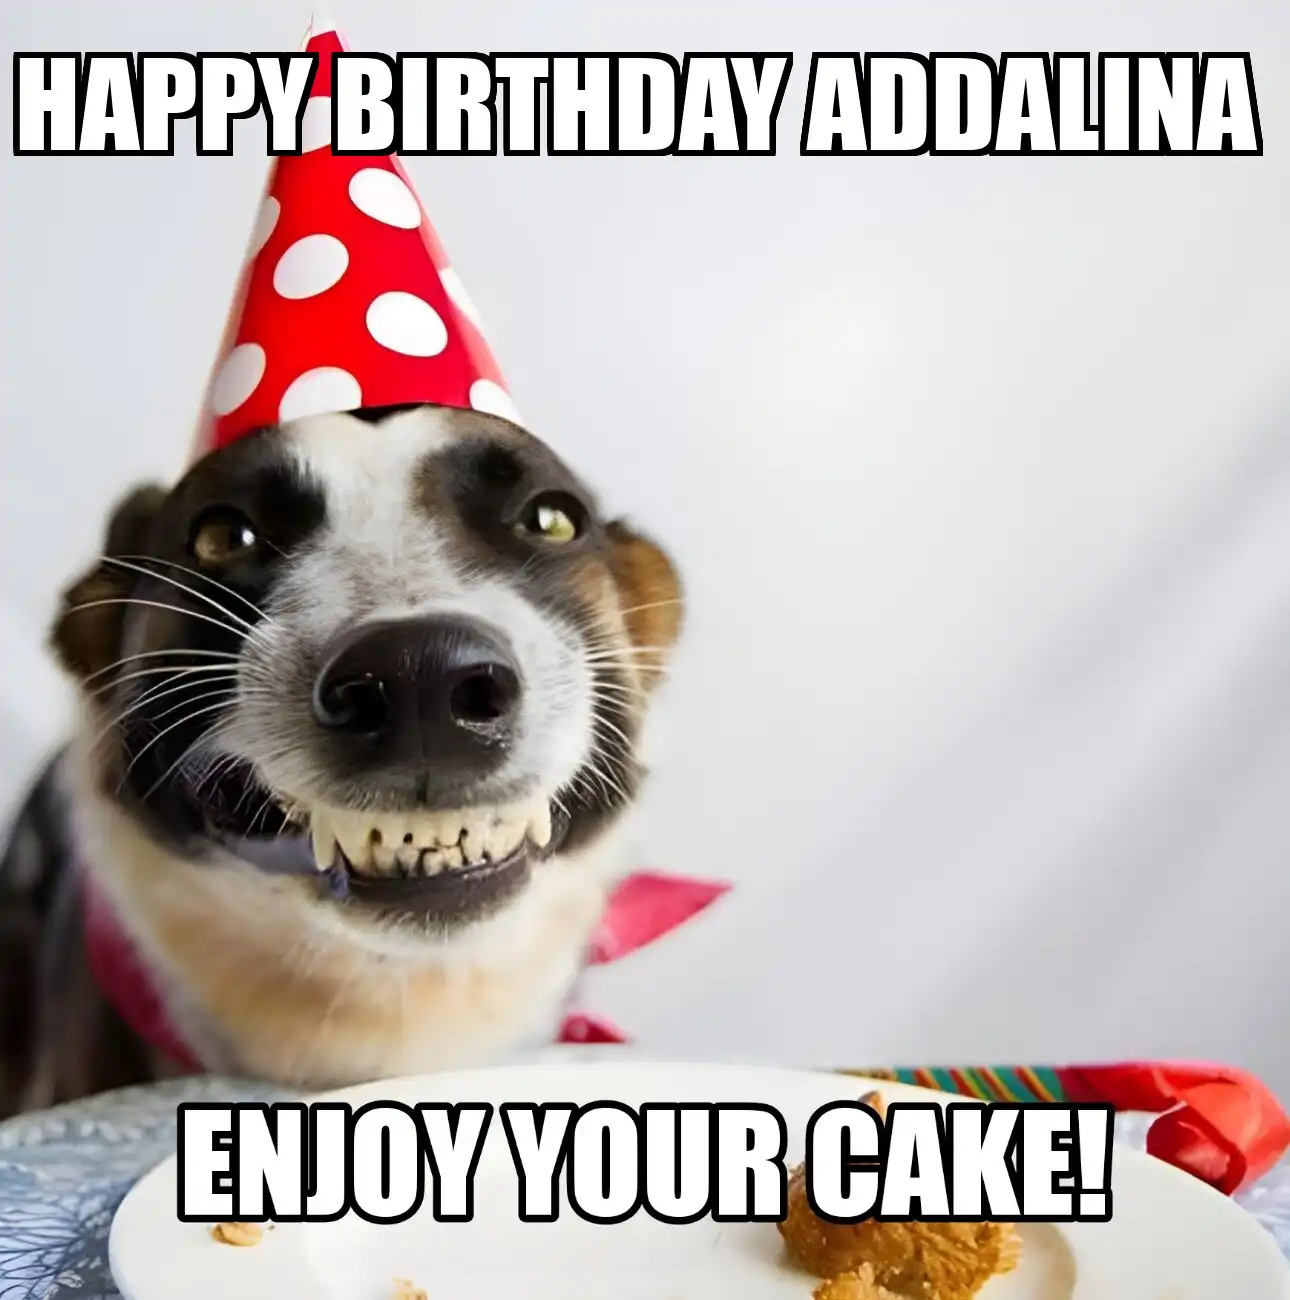 Happy Birthday Addalina Enjoy Your Cake Dog Meme